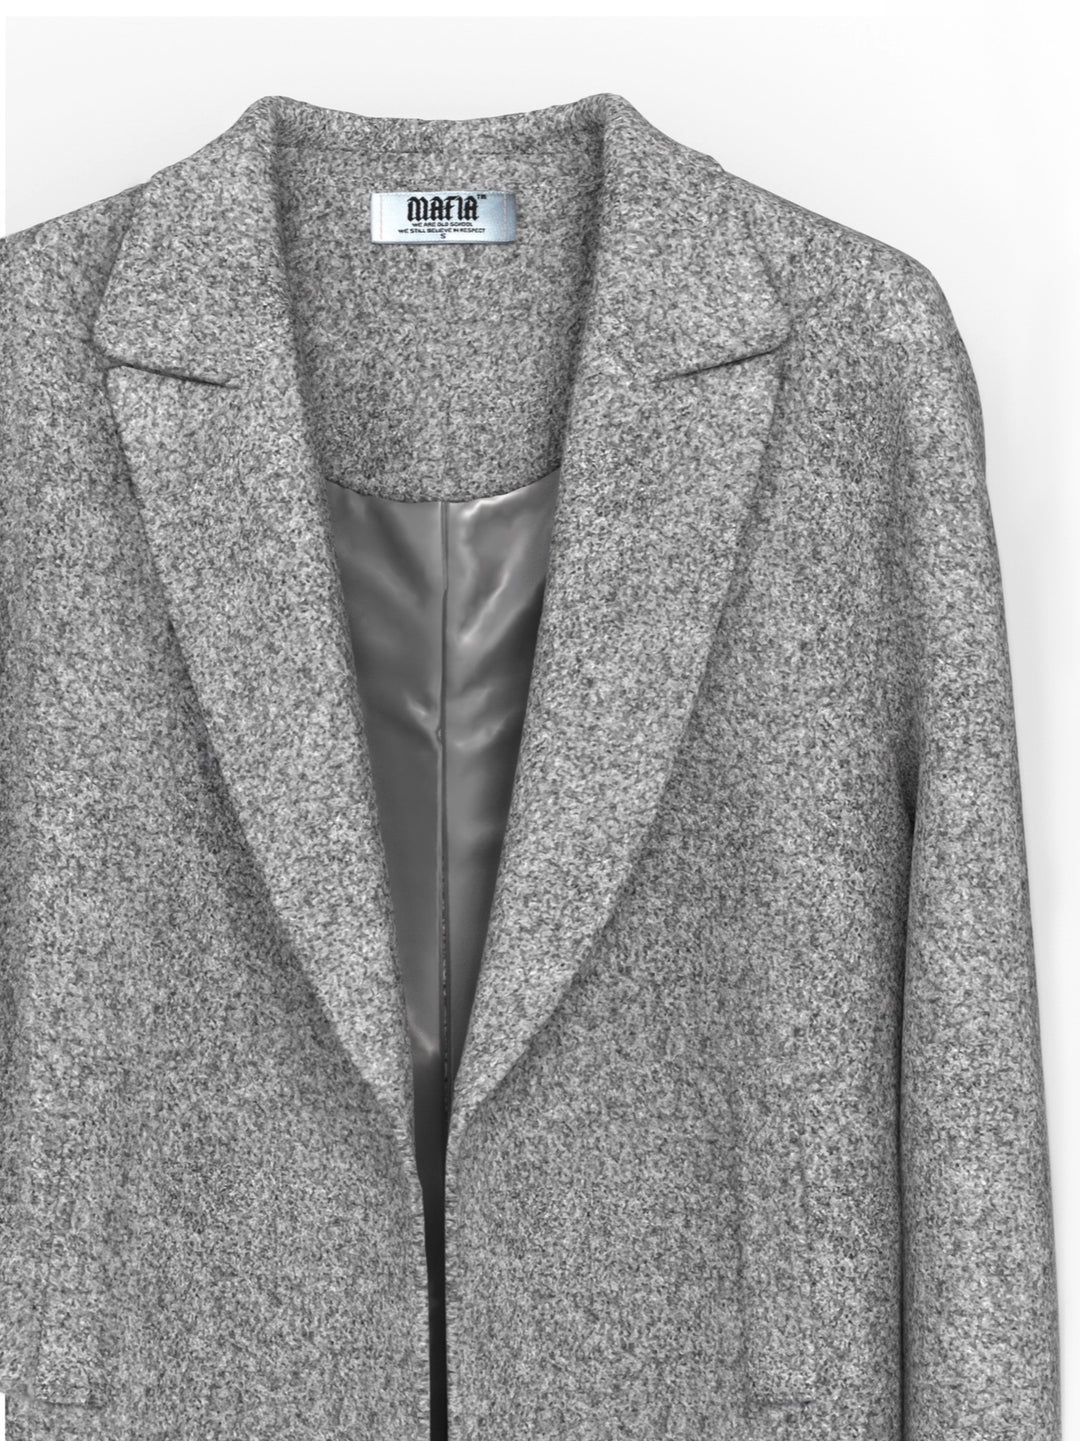 Oversize Coat - Grey